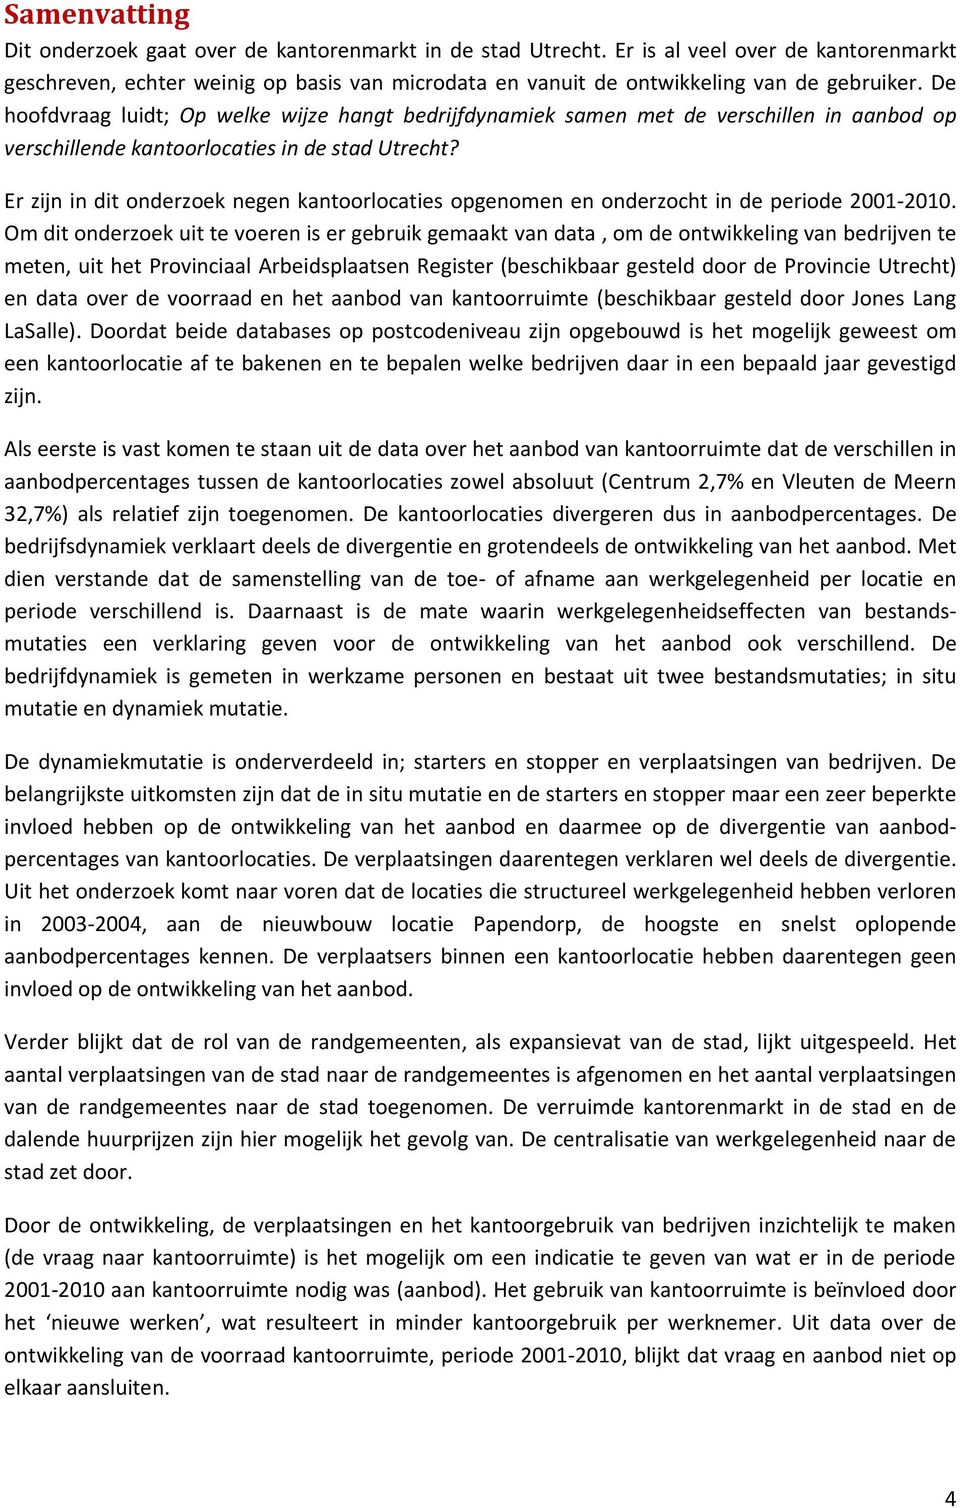 De hoofdvraag luidt; Op welke wijze hangt bedrijfdynamiek samen met de verschillen in aanbod op verschillende kantoorlocaties in de stad Utrecht?